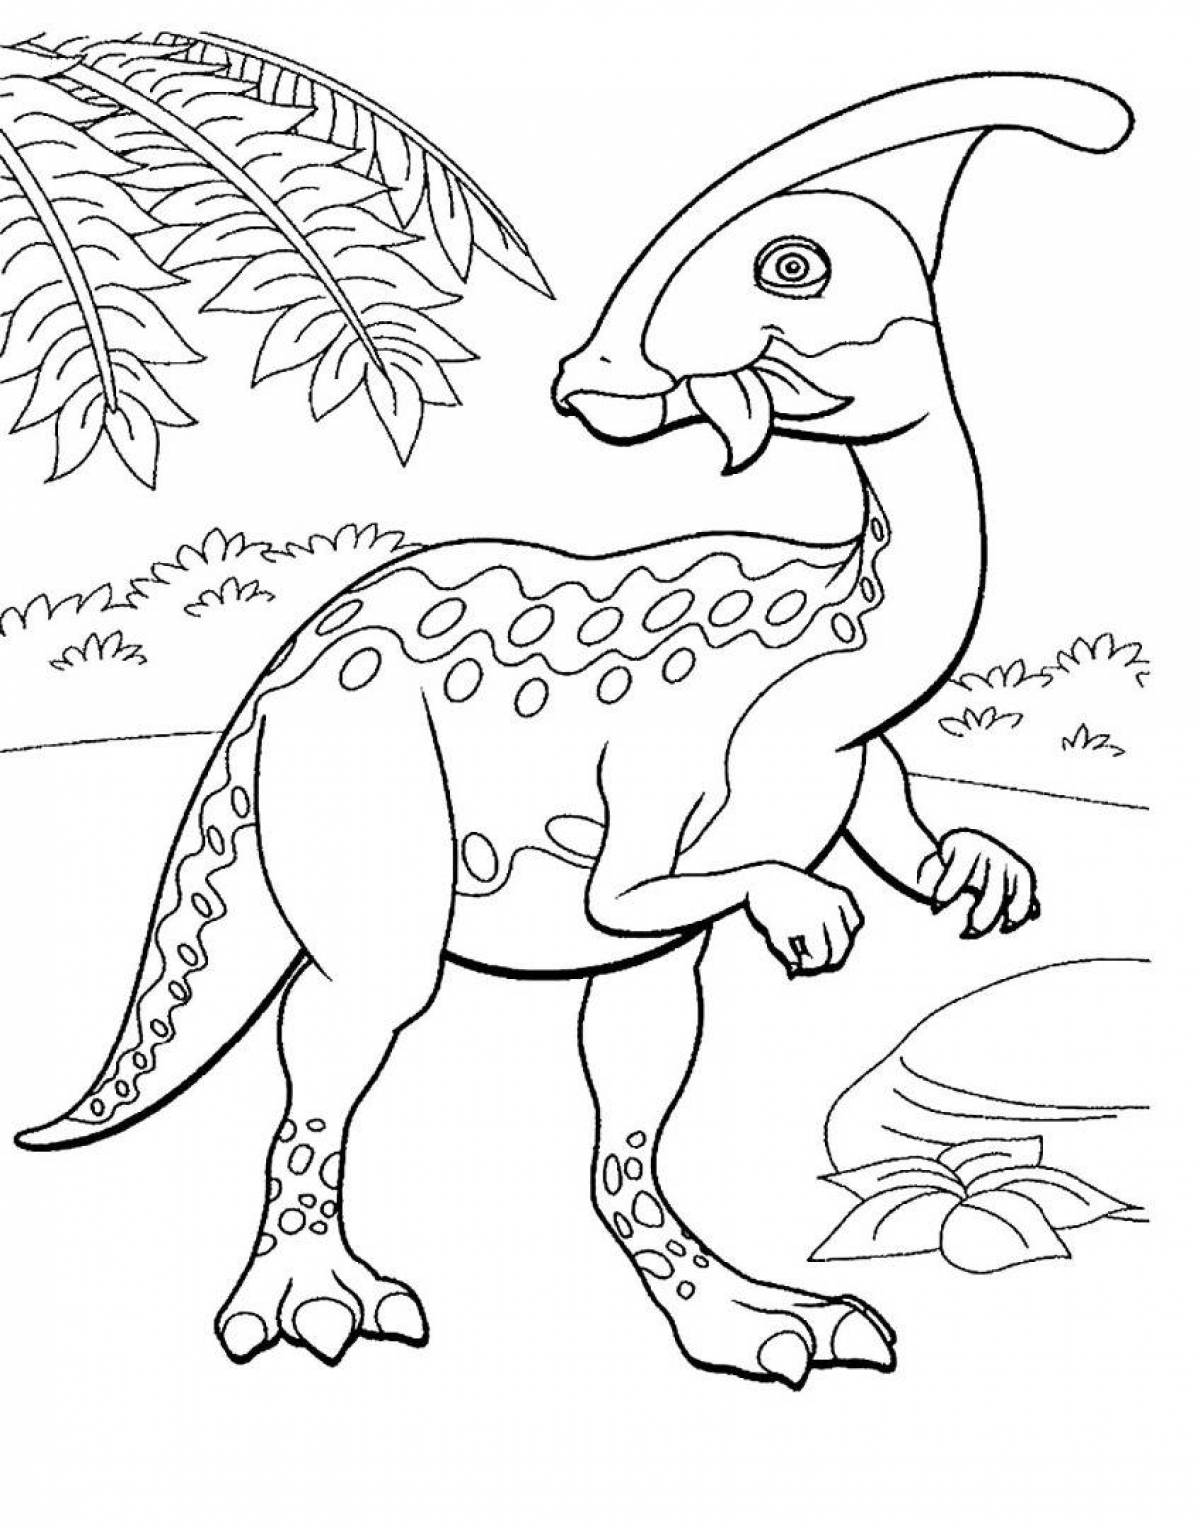 Раскраски динозавры формат а4. Дино раскраска динозавры. Перри Паразауролоф. Динозавр раскраска для детей. Динозаврики раскраска для детей.